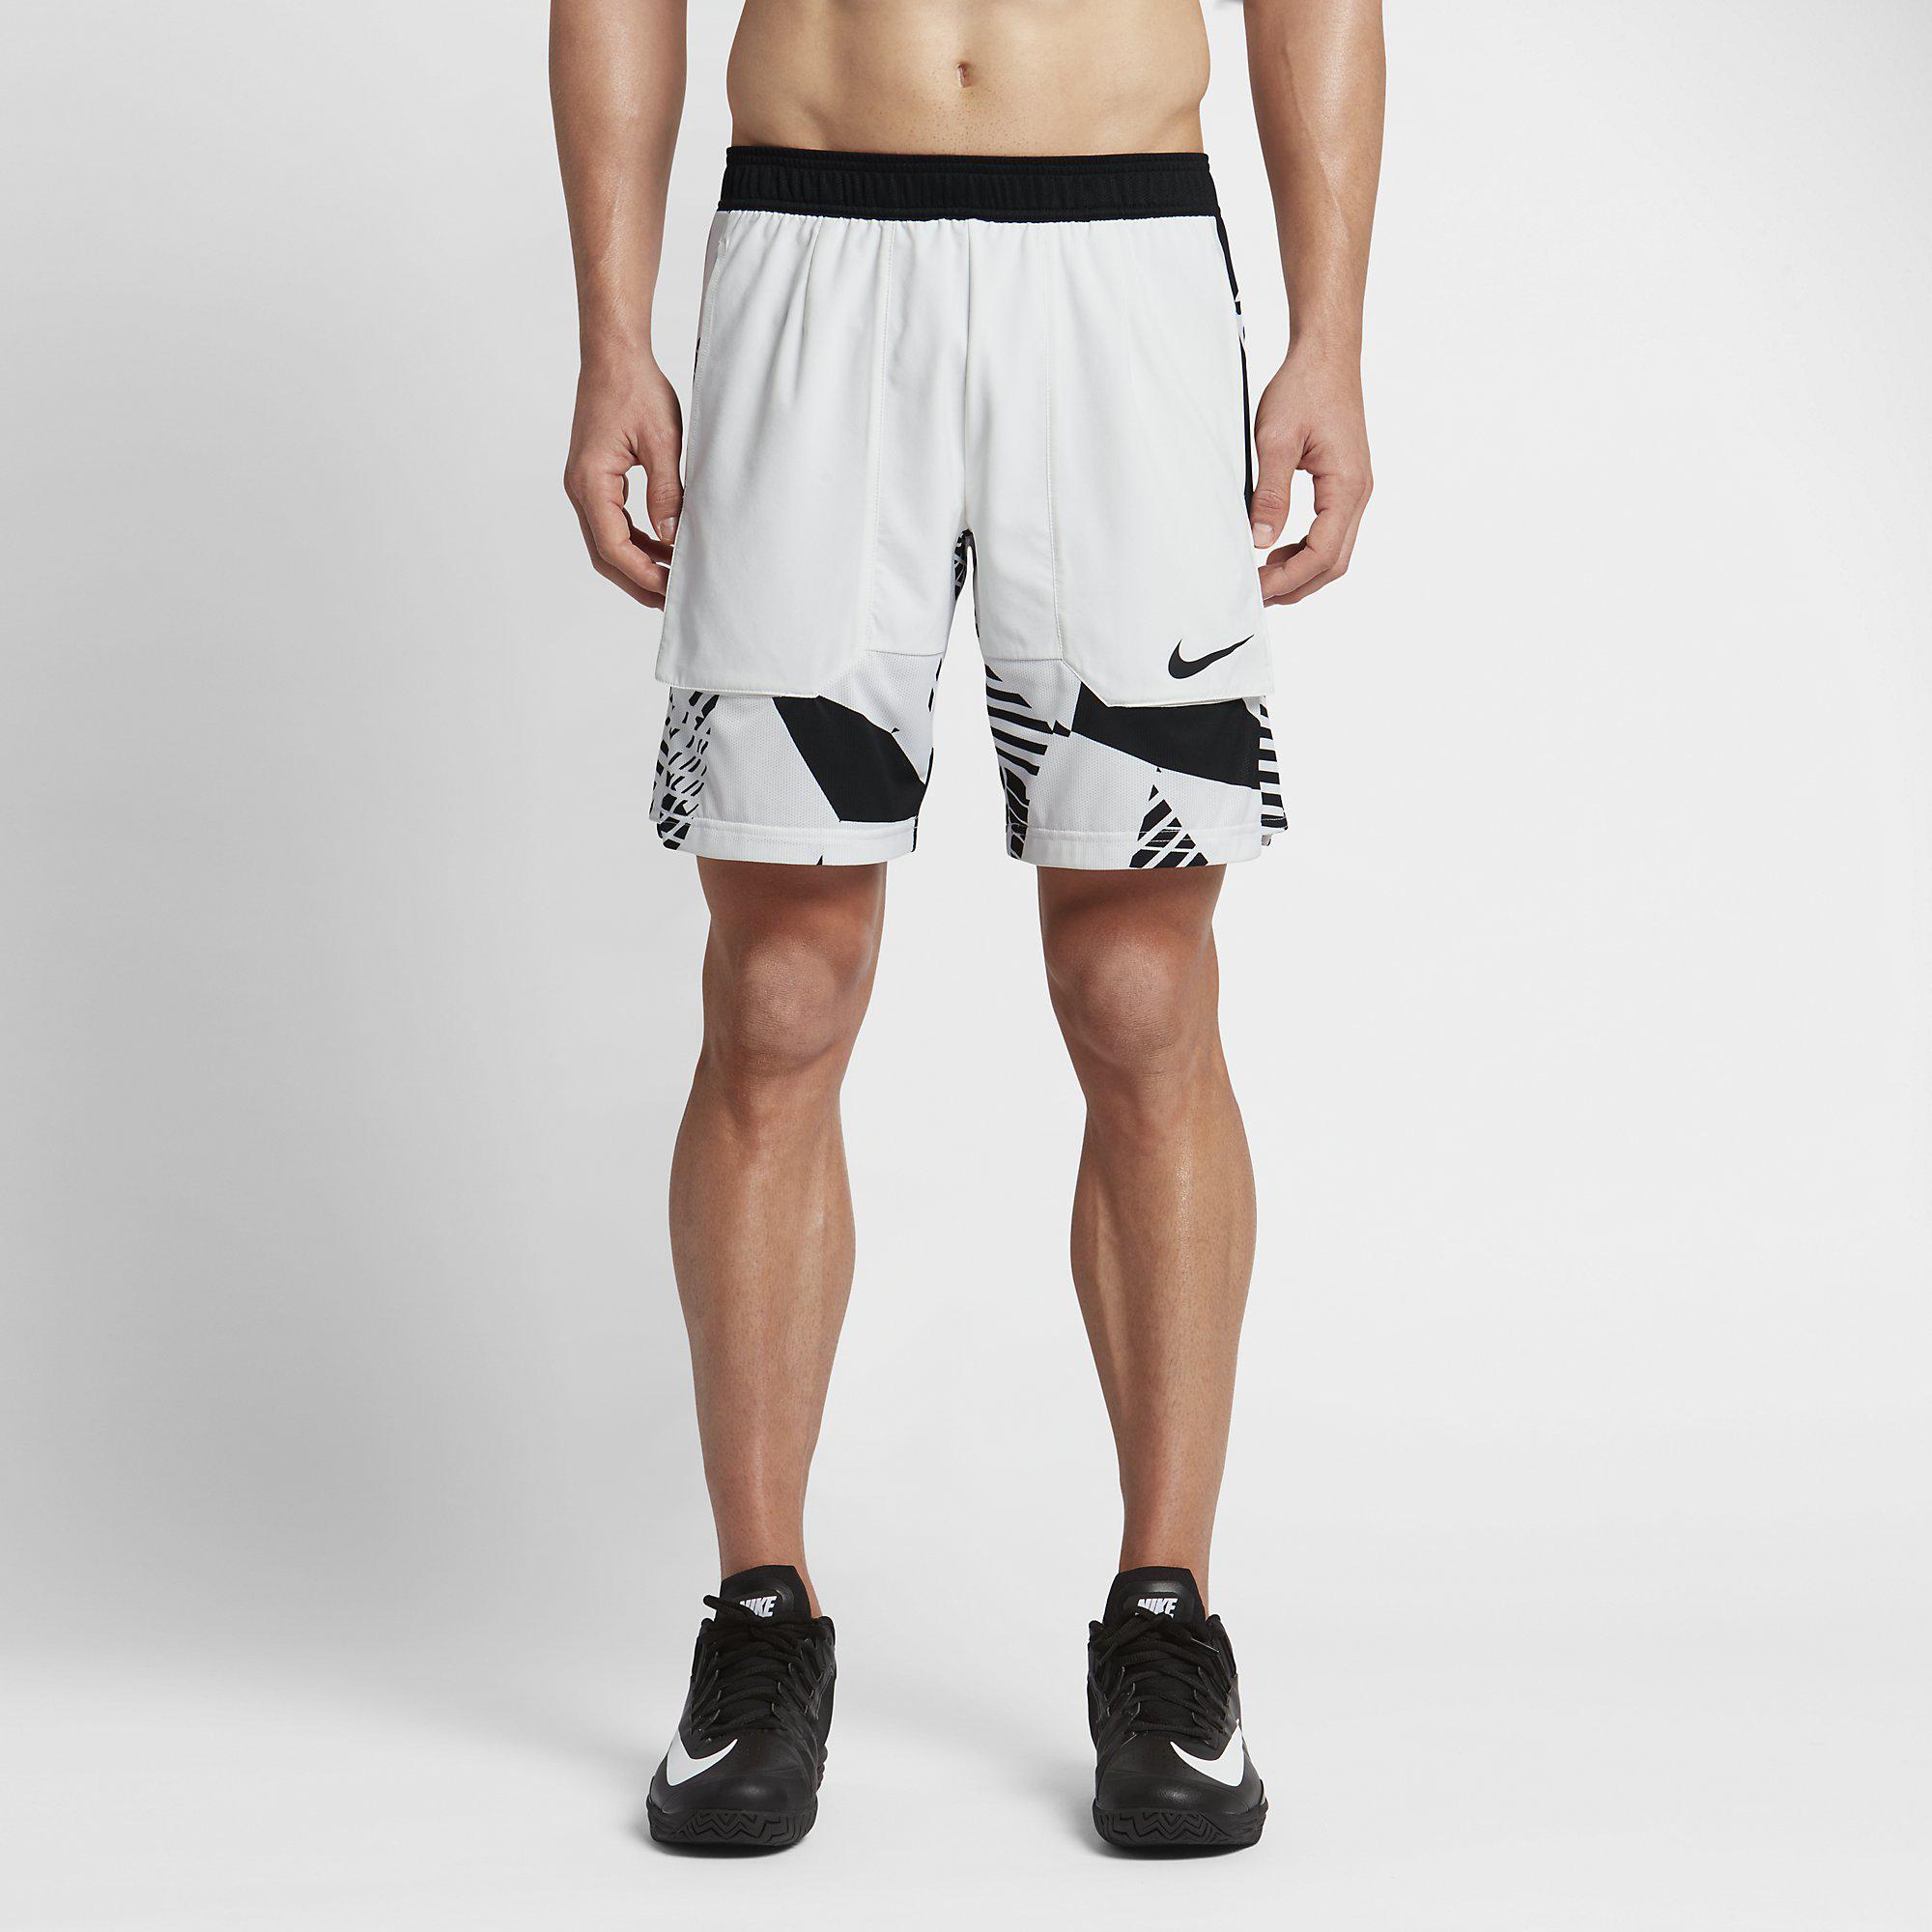 Nike Mens Dry 9 Inch Tennis Shorts - White/Black - Tennisnuts.com